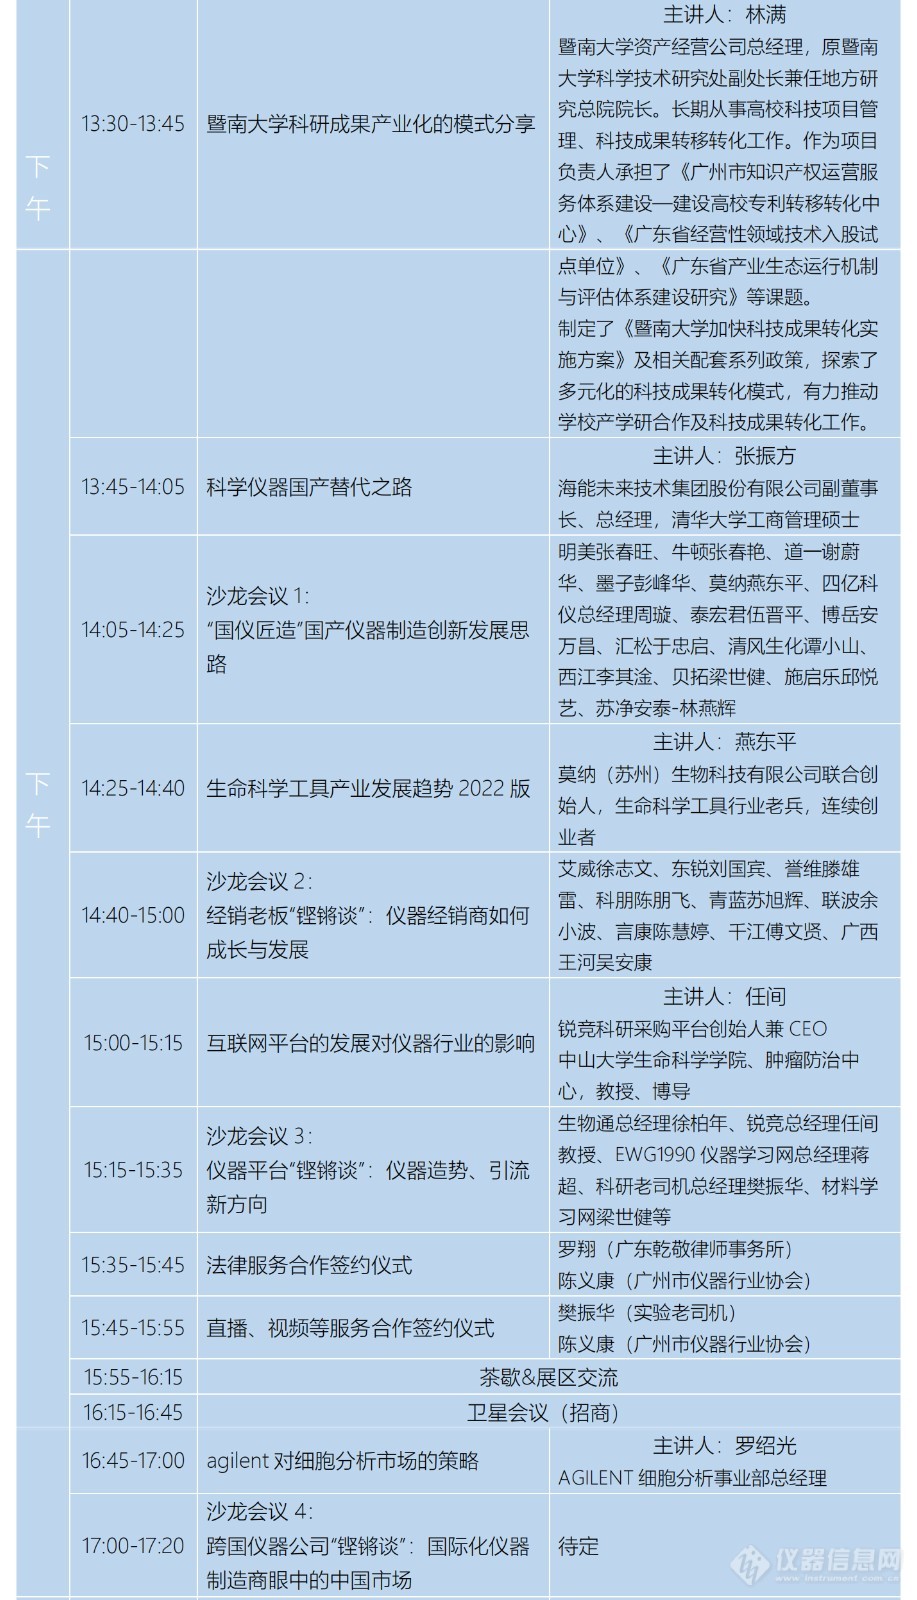 广州市仪器行业协会年会暨推动科学产业发展创新大会